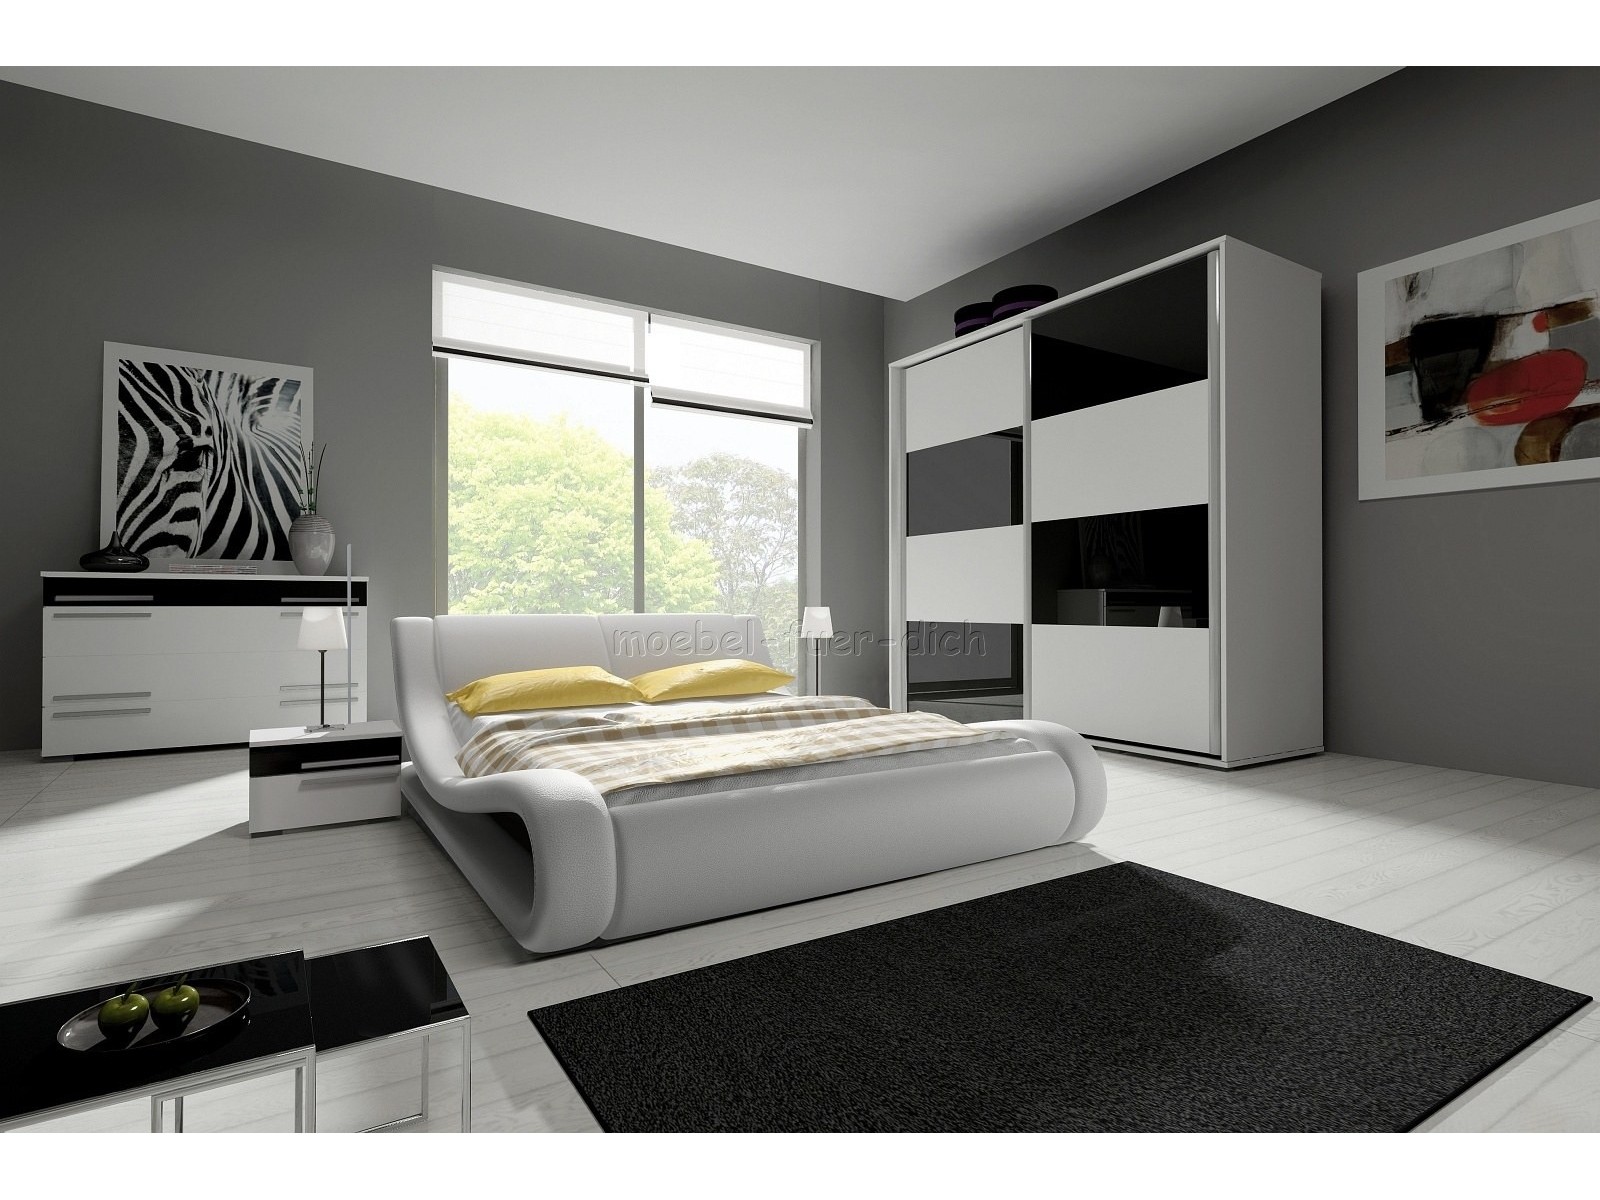 hochglanz schlafzimmer mit designerbett